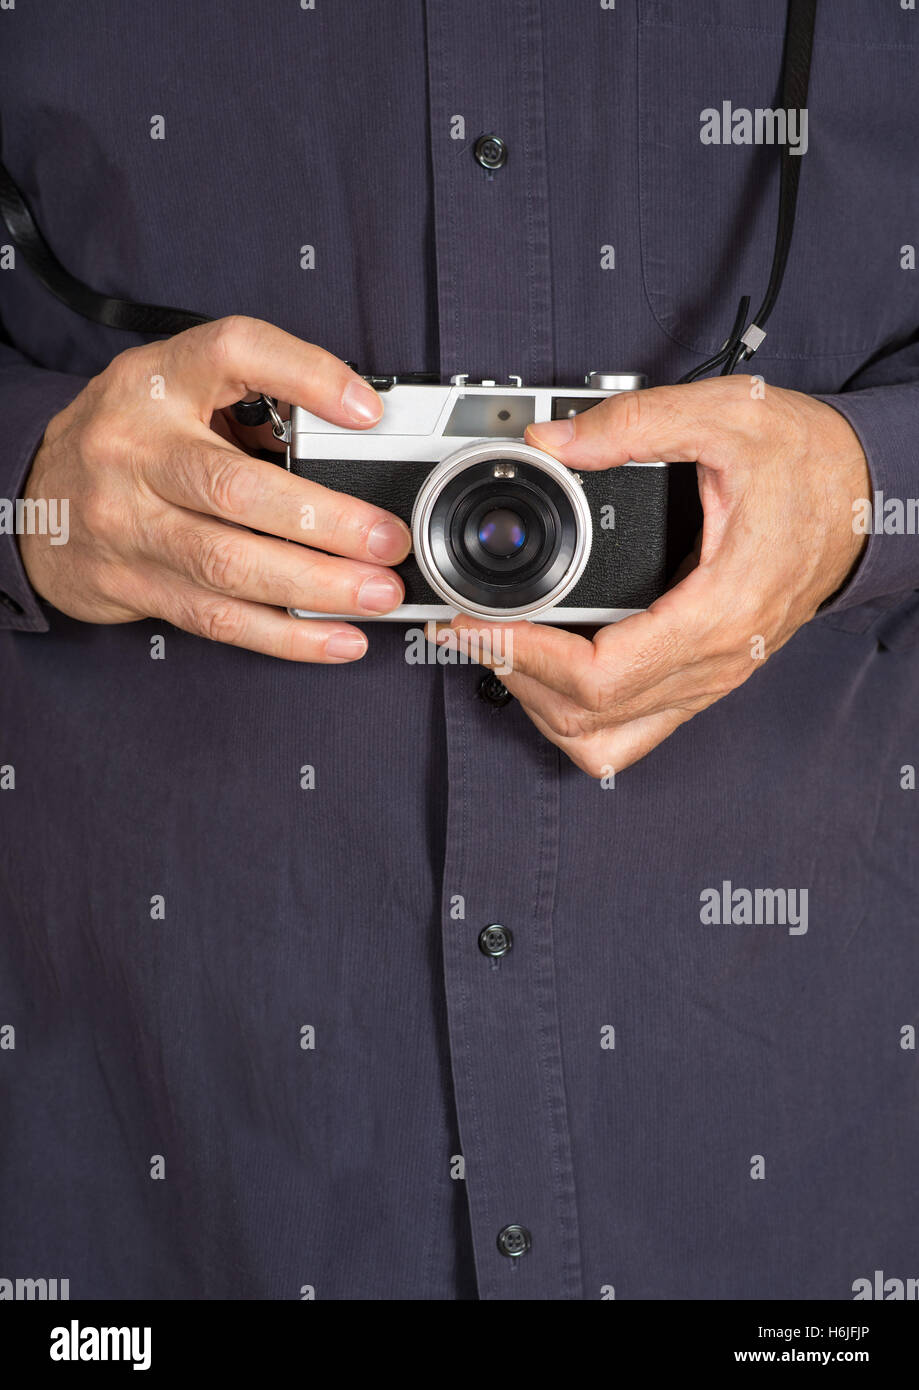 Les mains tenant un appareil photo compact analog Banque D'Images